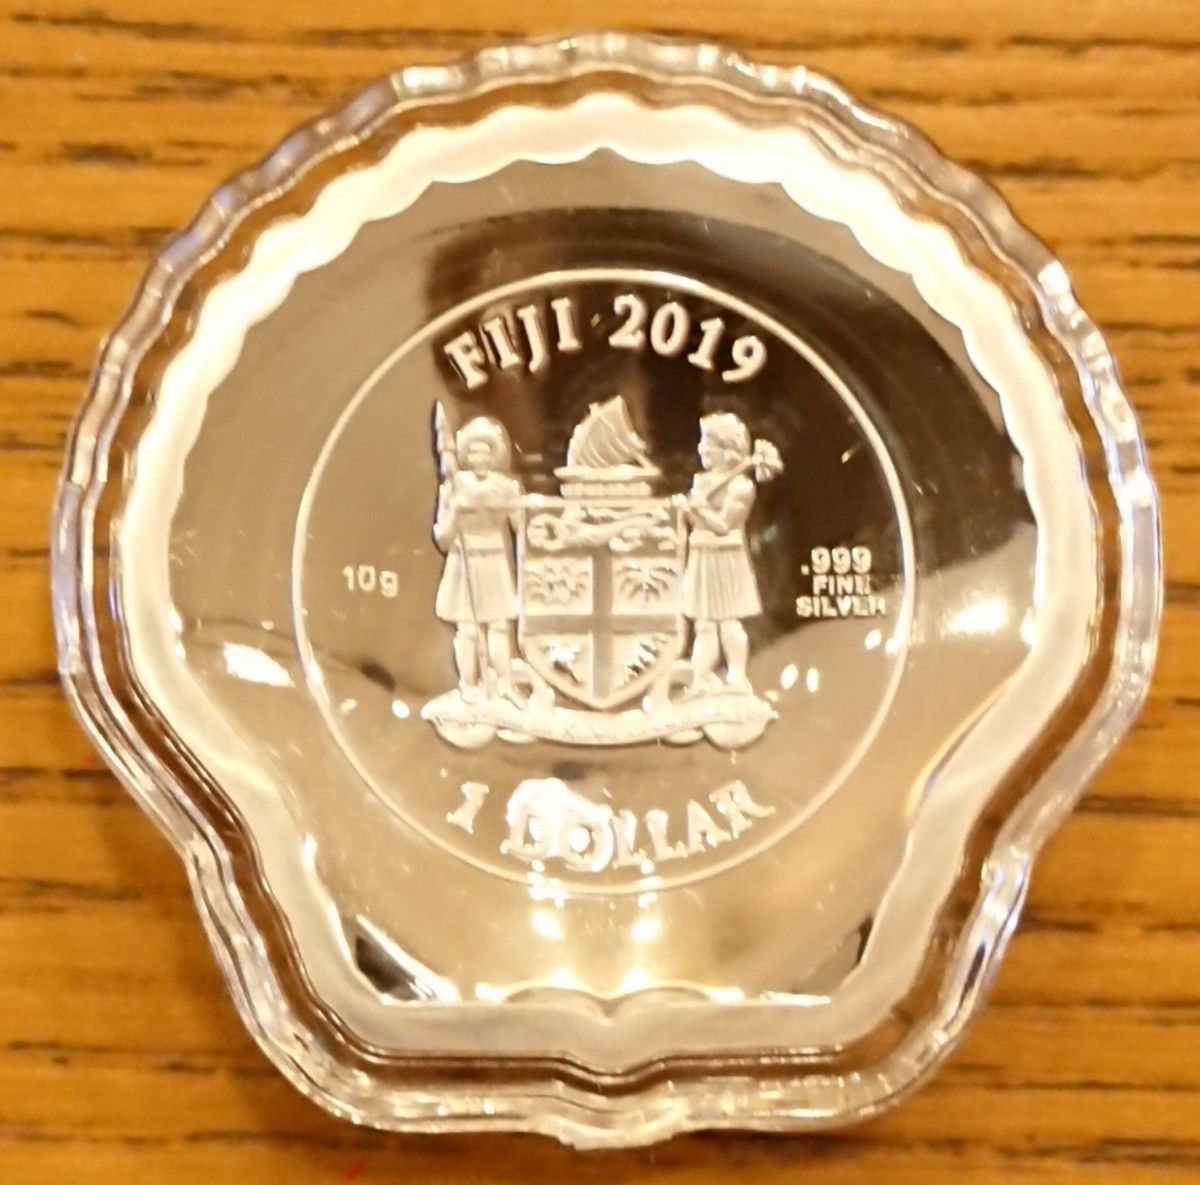 2019 フィジー ホタテ貝型 1ドル プルーフカラー銀貨 商品タグ型の品質保証書付き